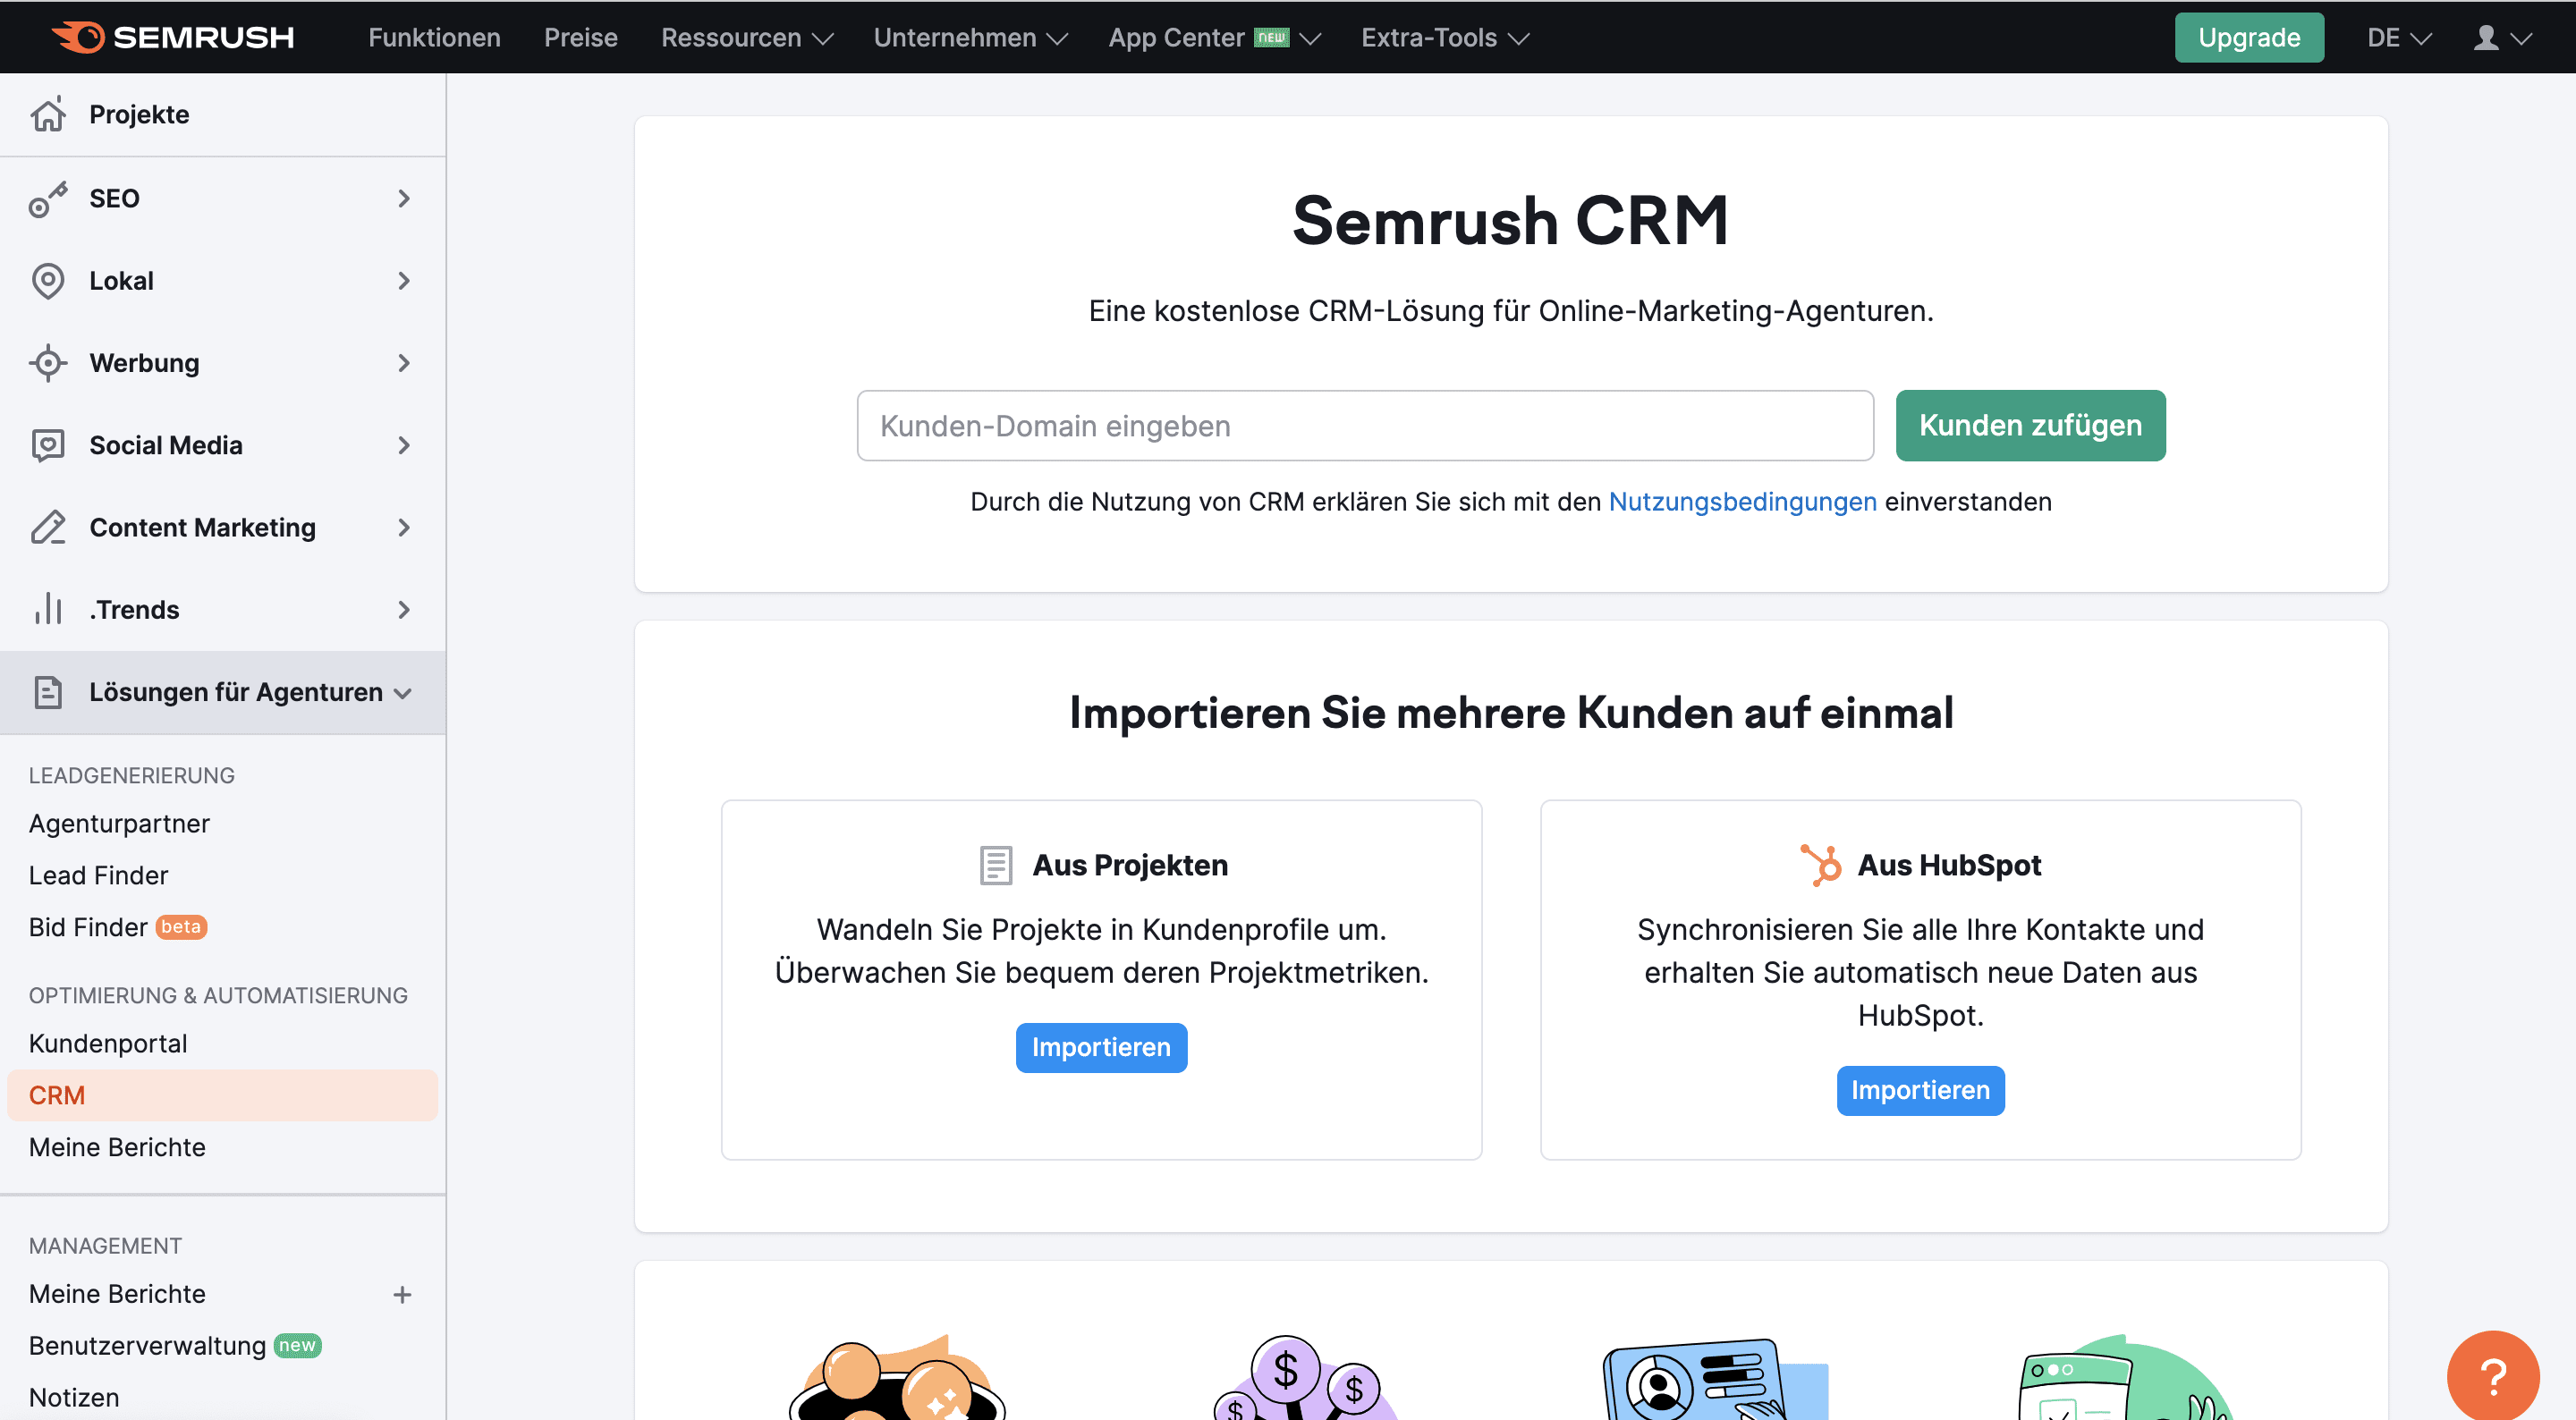 Semrush CRM